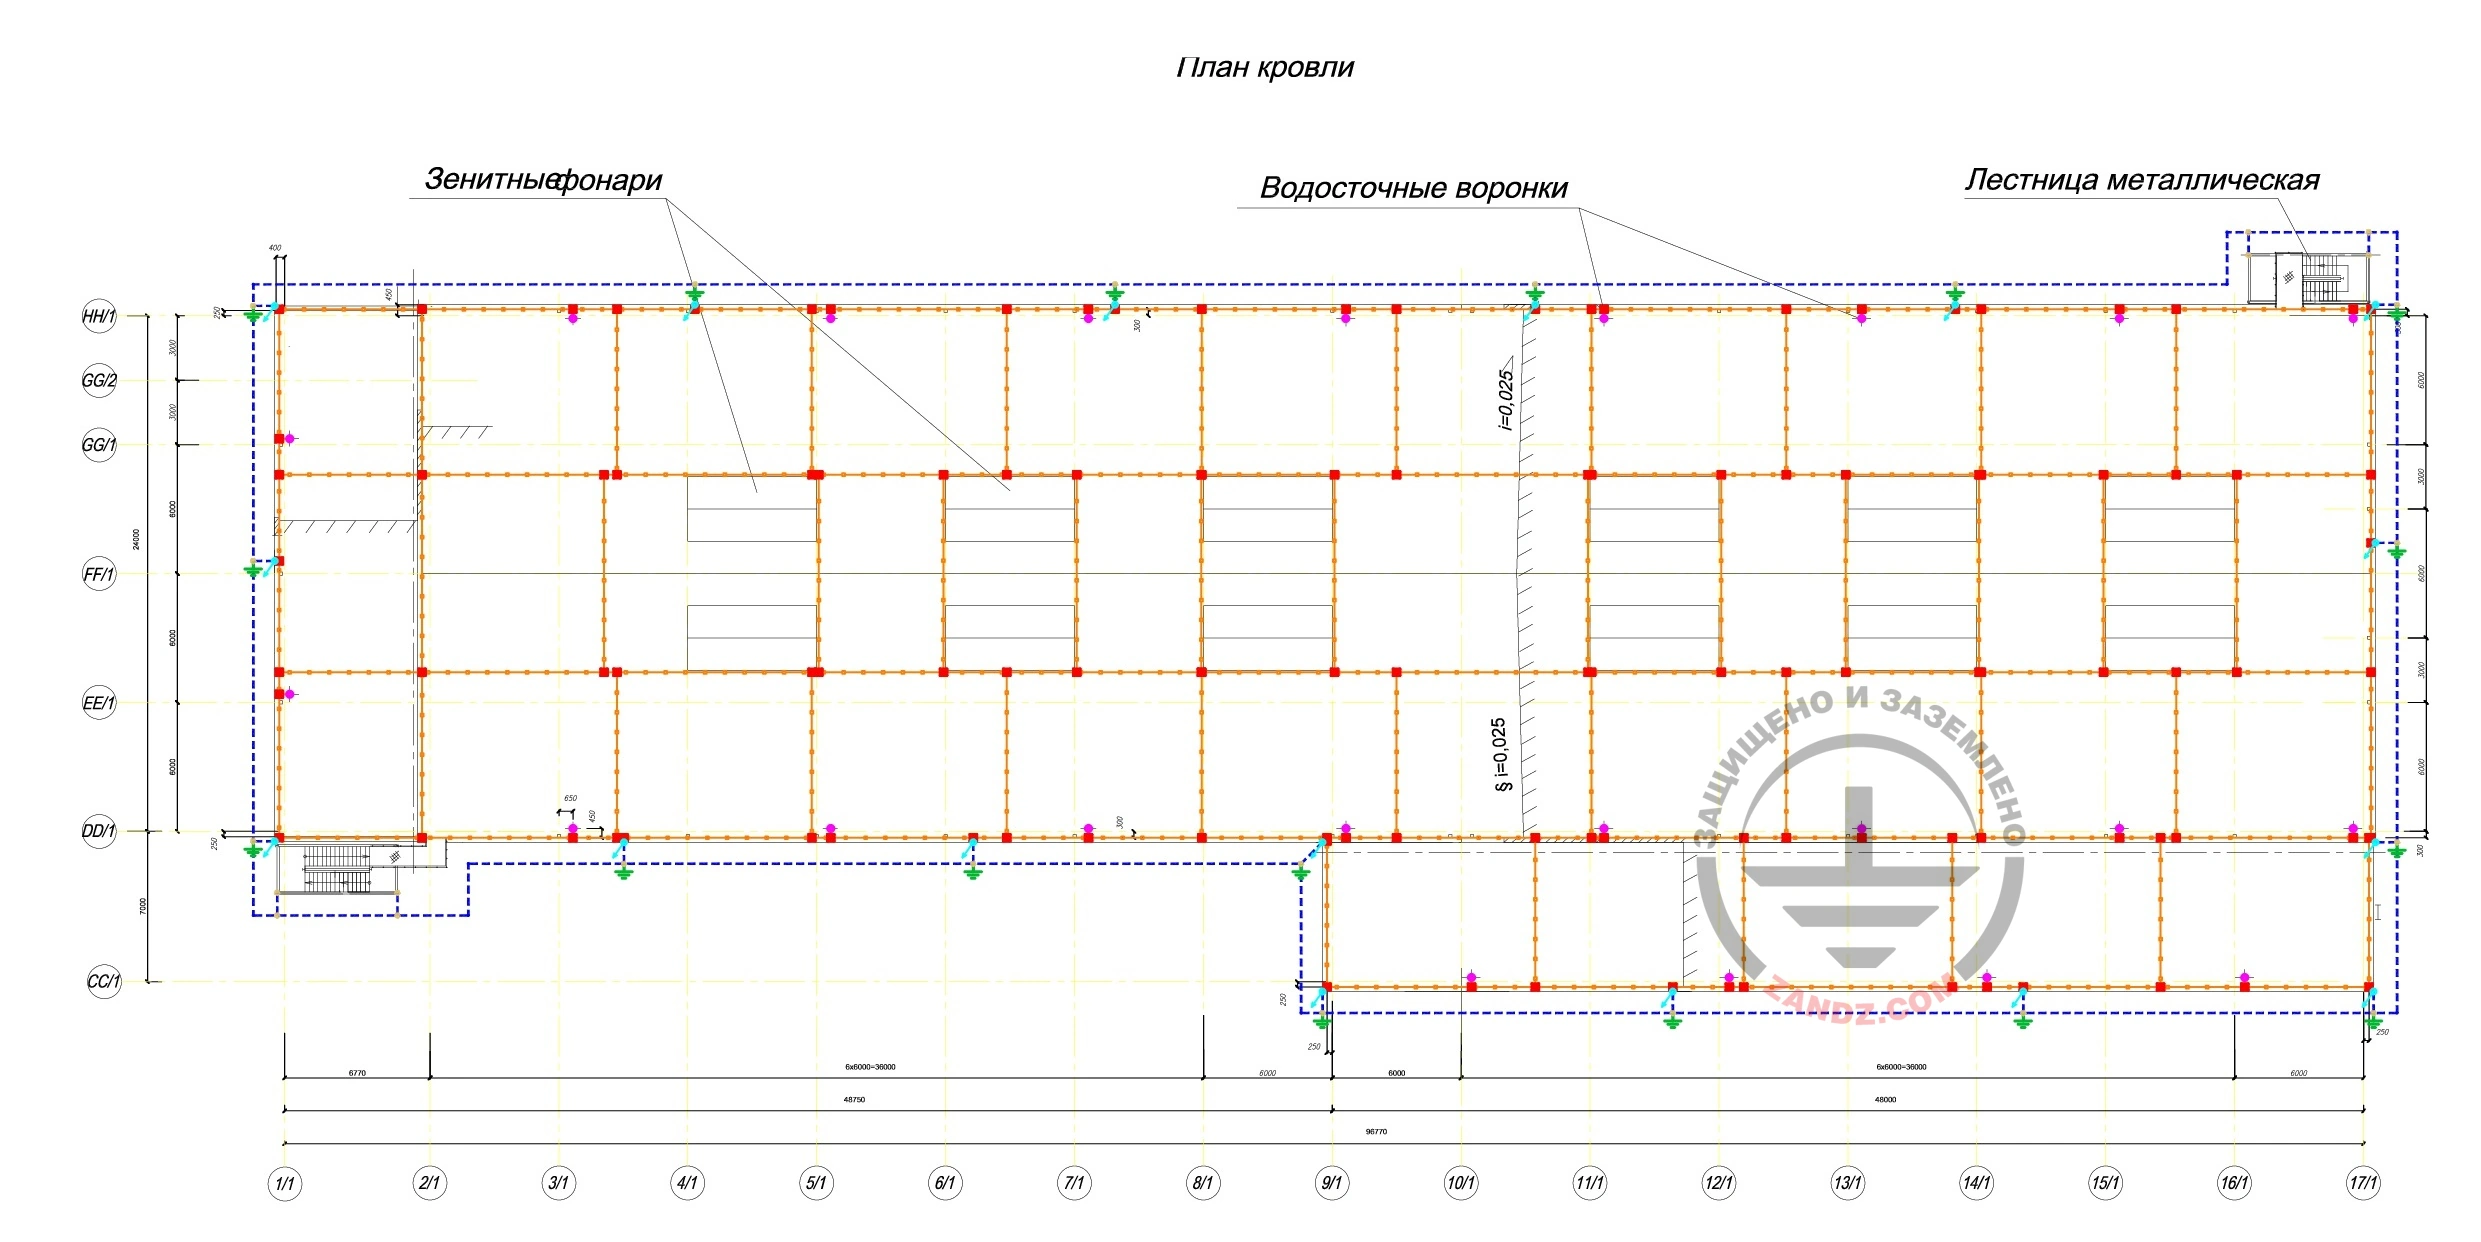 Схема молниезащиты для цеха литья и обработки (схема в полном размере доступна по ссылке)